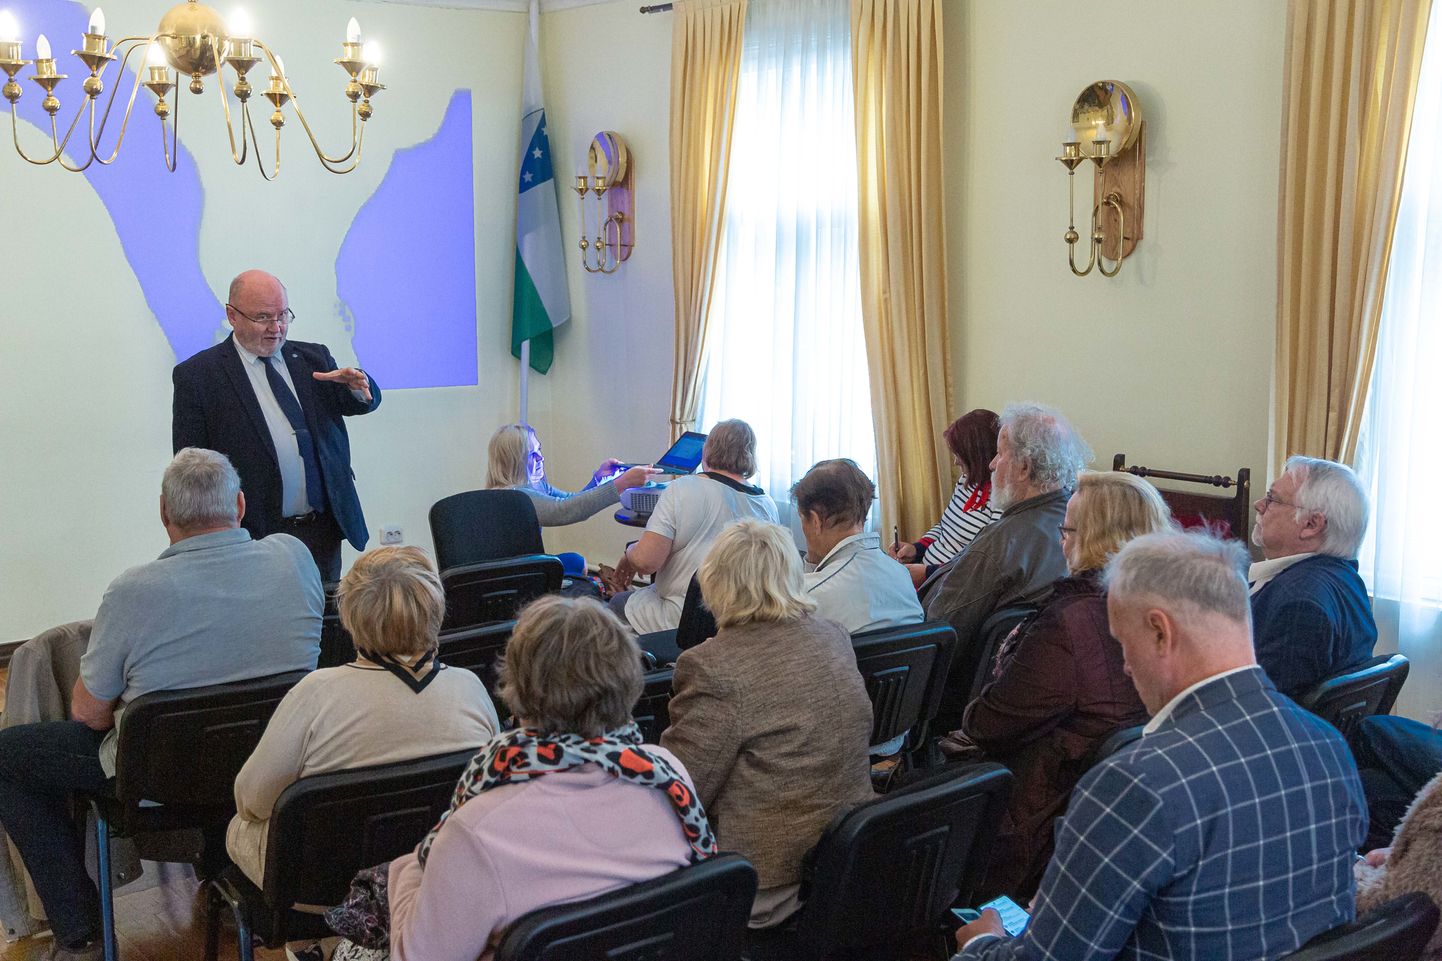 Kõnekoosolek Valga raekojas, kus õigusteadlane Igor Gräzin rääkis Valgamaa ajaloost ning tulevikust.